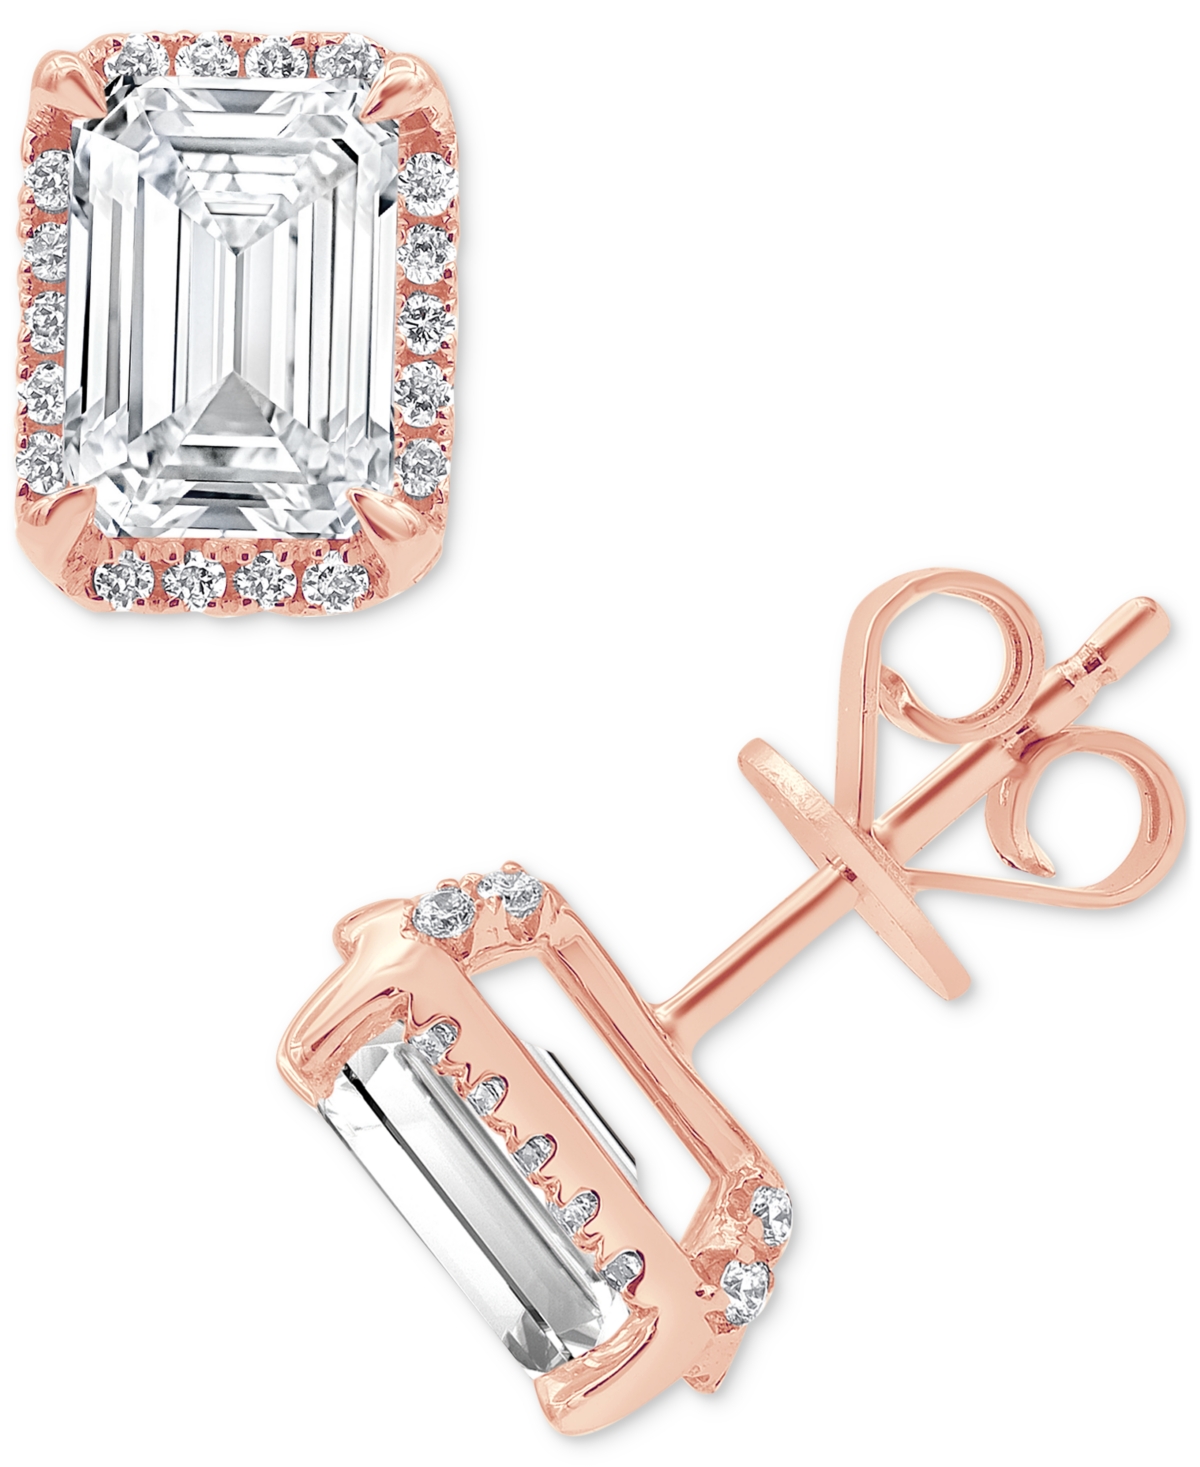 Certified Lab Grown Diamond Emerald-Cut Halo Stud Earrings (3-1/3 ct. t.w.) in 14k Gold - Rose Gold